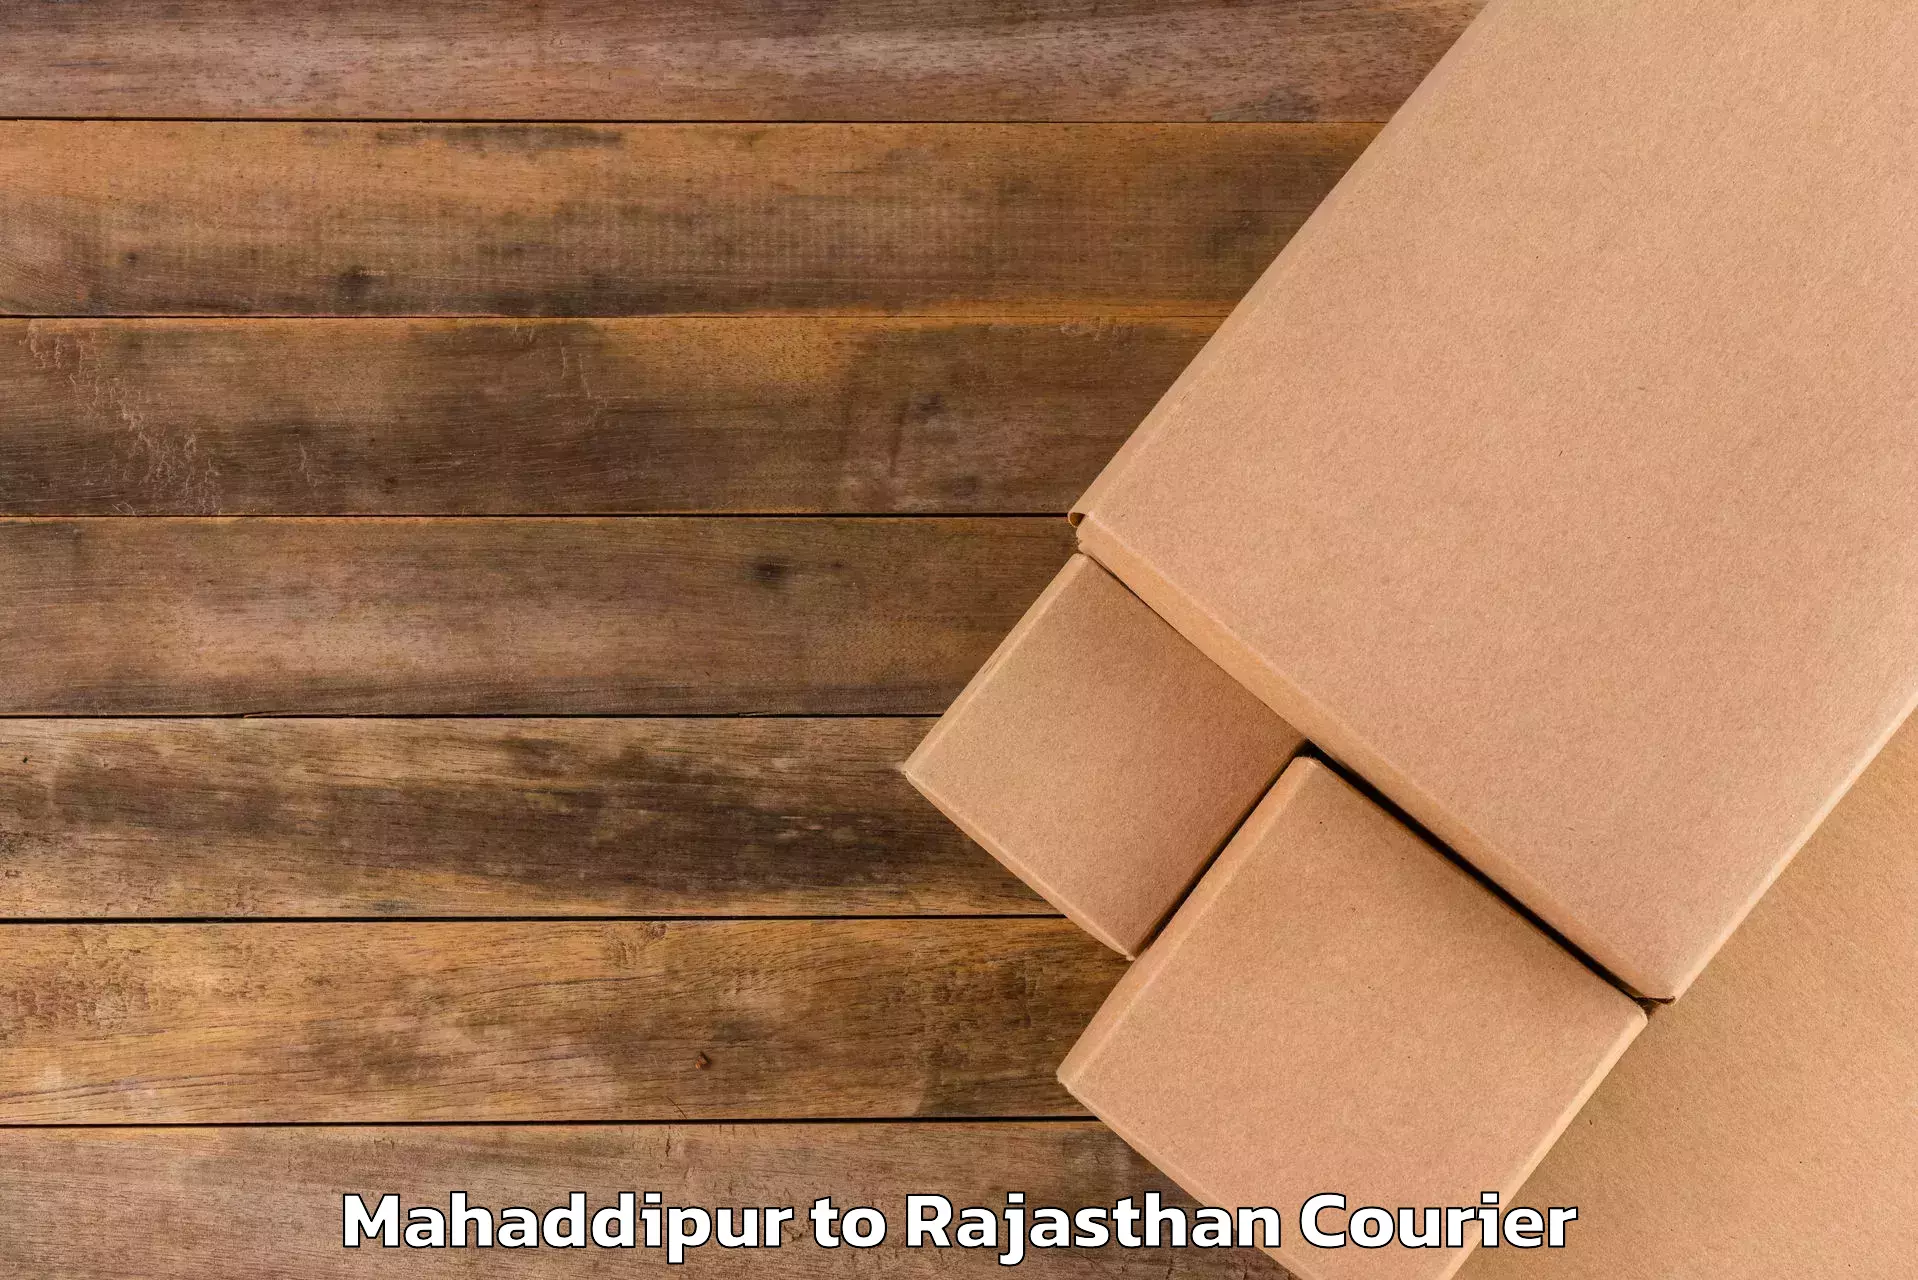 Luggage shipping specialists Mahaddipur to Khandela Sikar